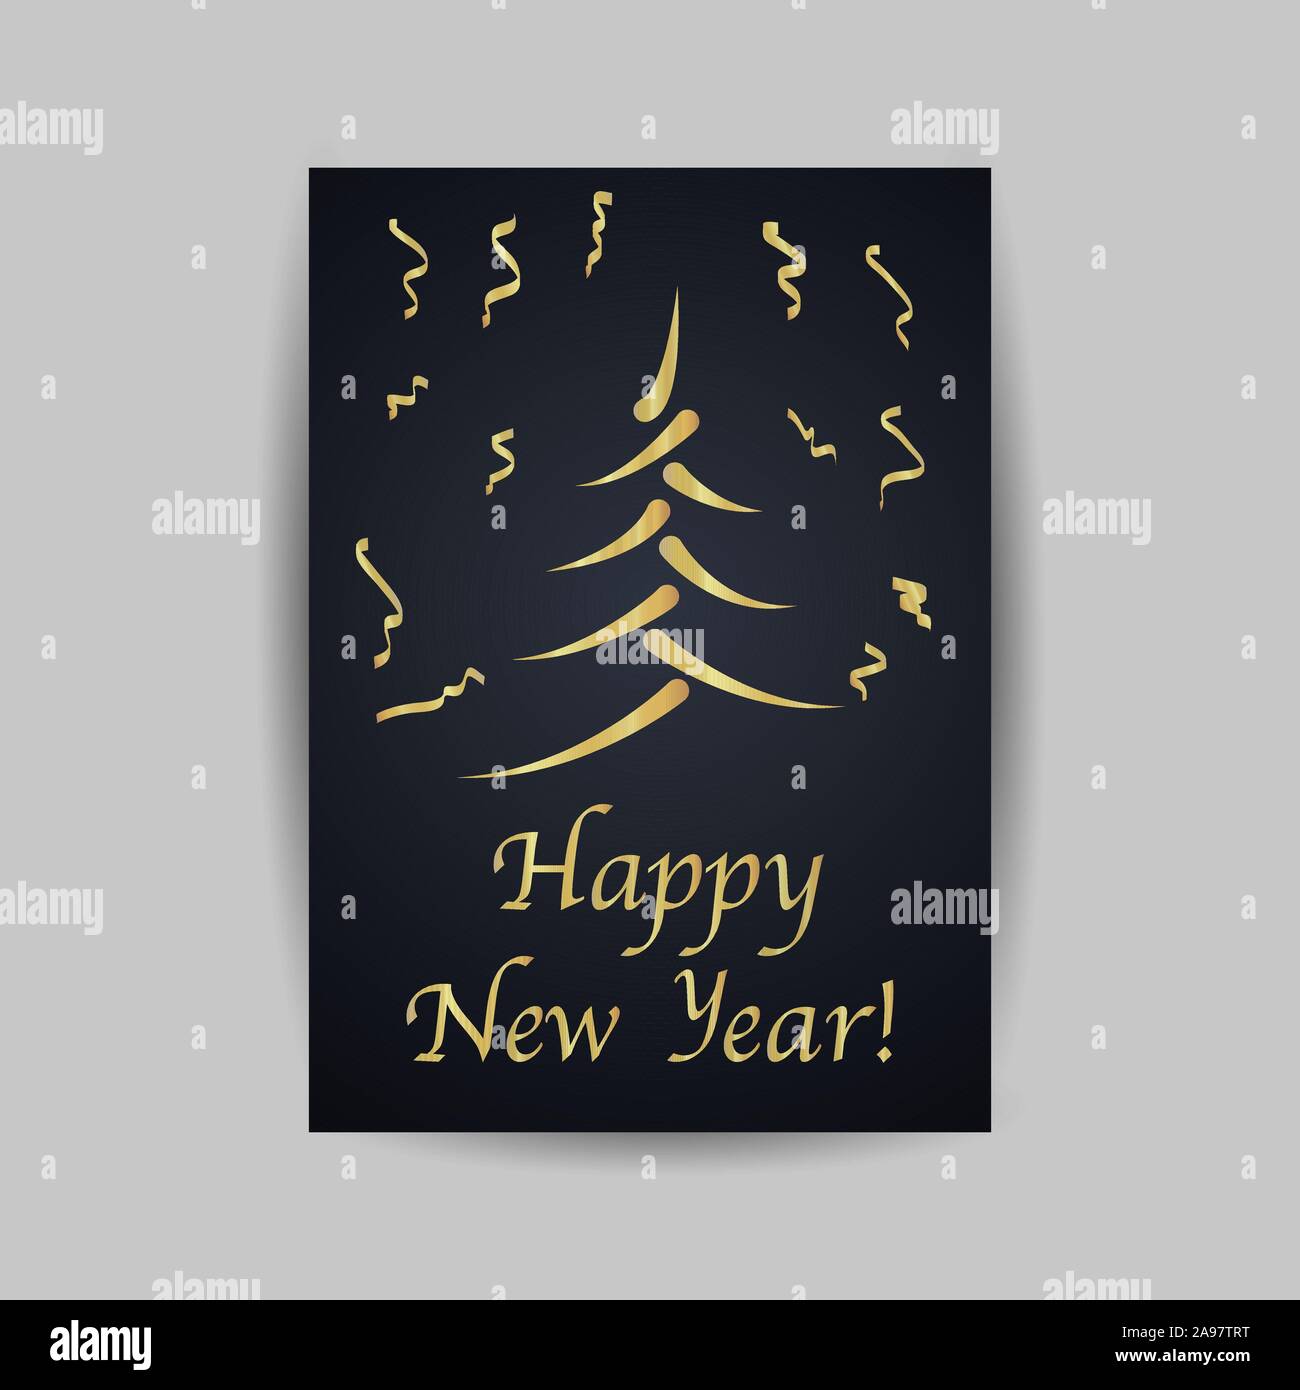 Joyeux Noël et Bonne année 2020 cartes de voeux. Le minimalisme vector illustration creative design d'or. Pour célébrer, l'invitation, l'esprit parti Illustration de Vecteur